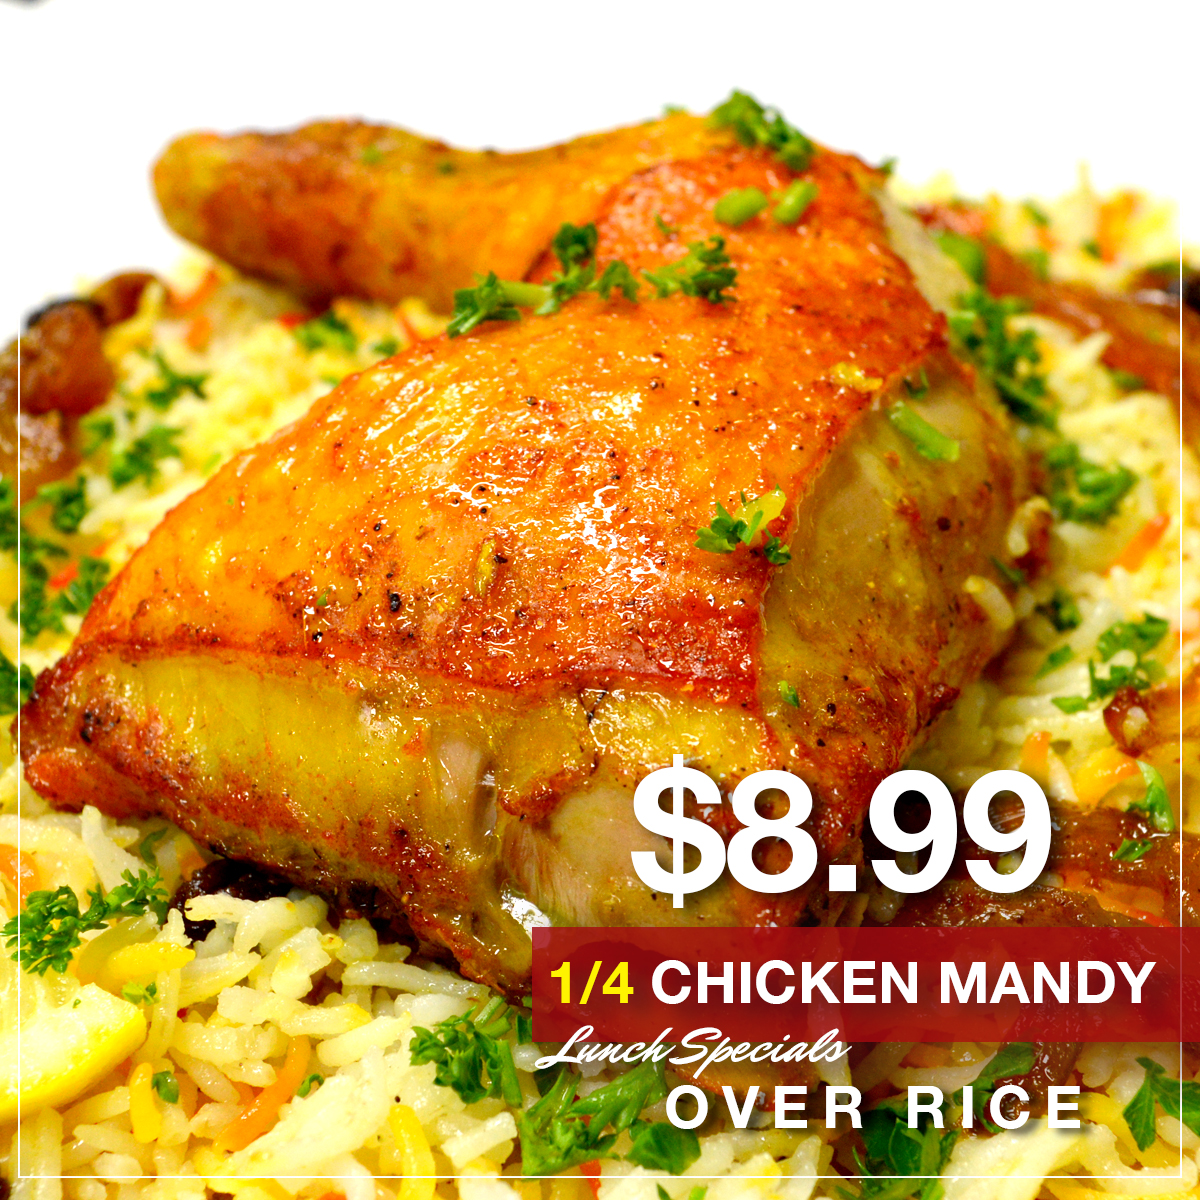 QAUR Chicken Mandy Lunch specials-22